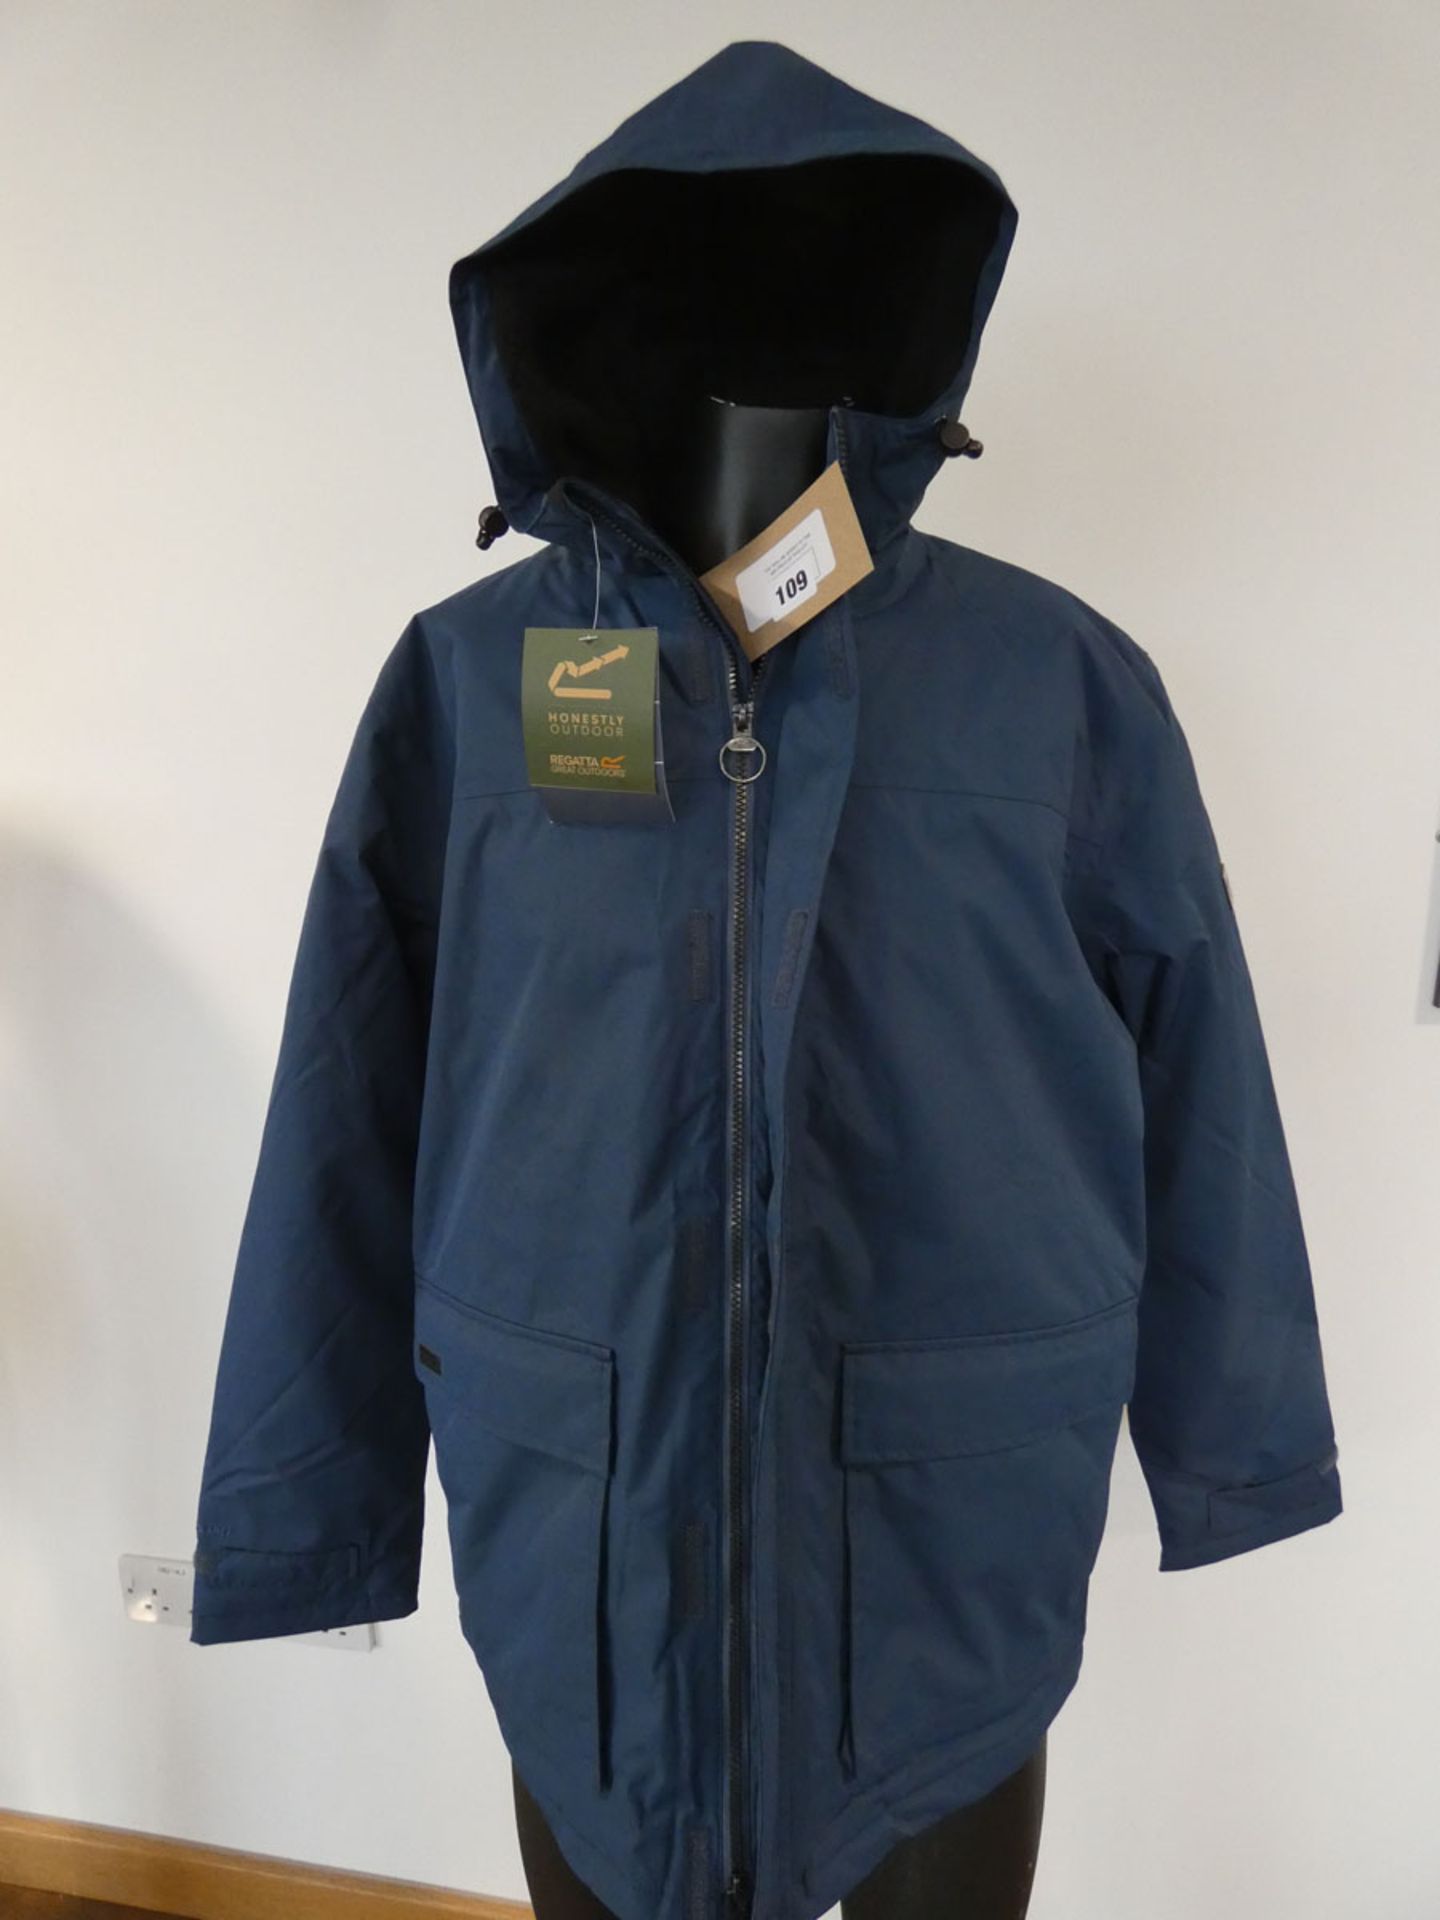 Regatta Outdoors Sterlings II jacket in dark denim size XL